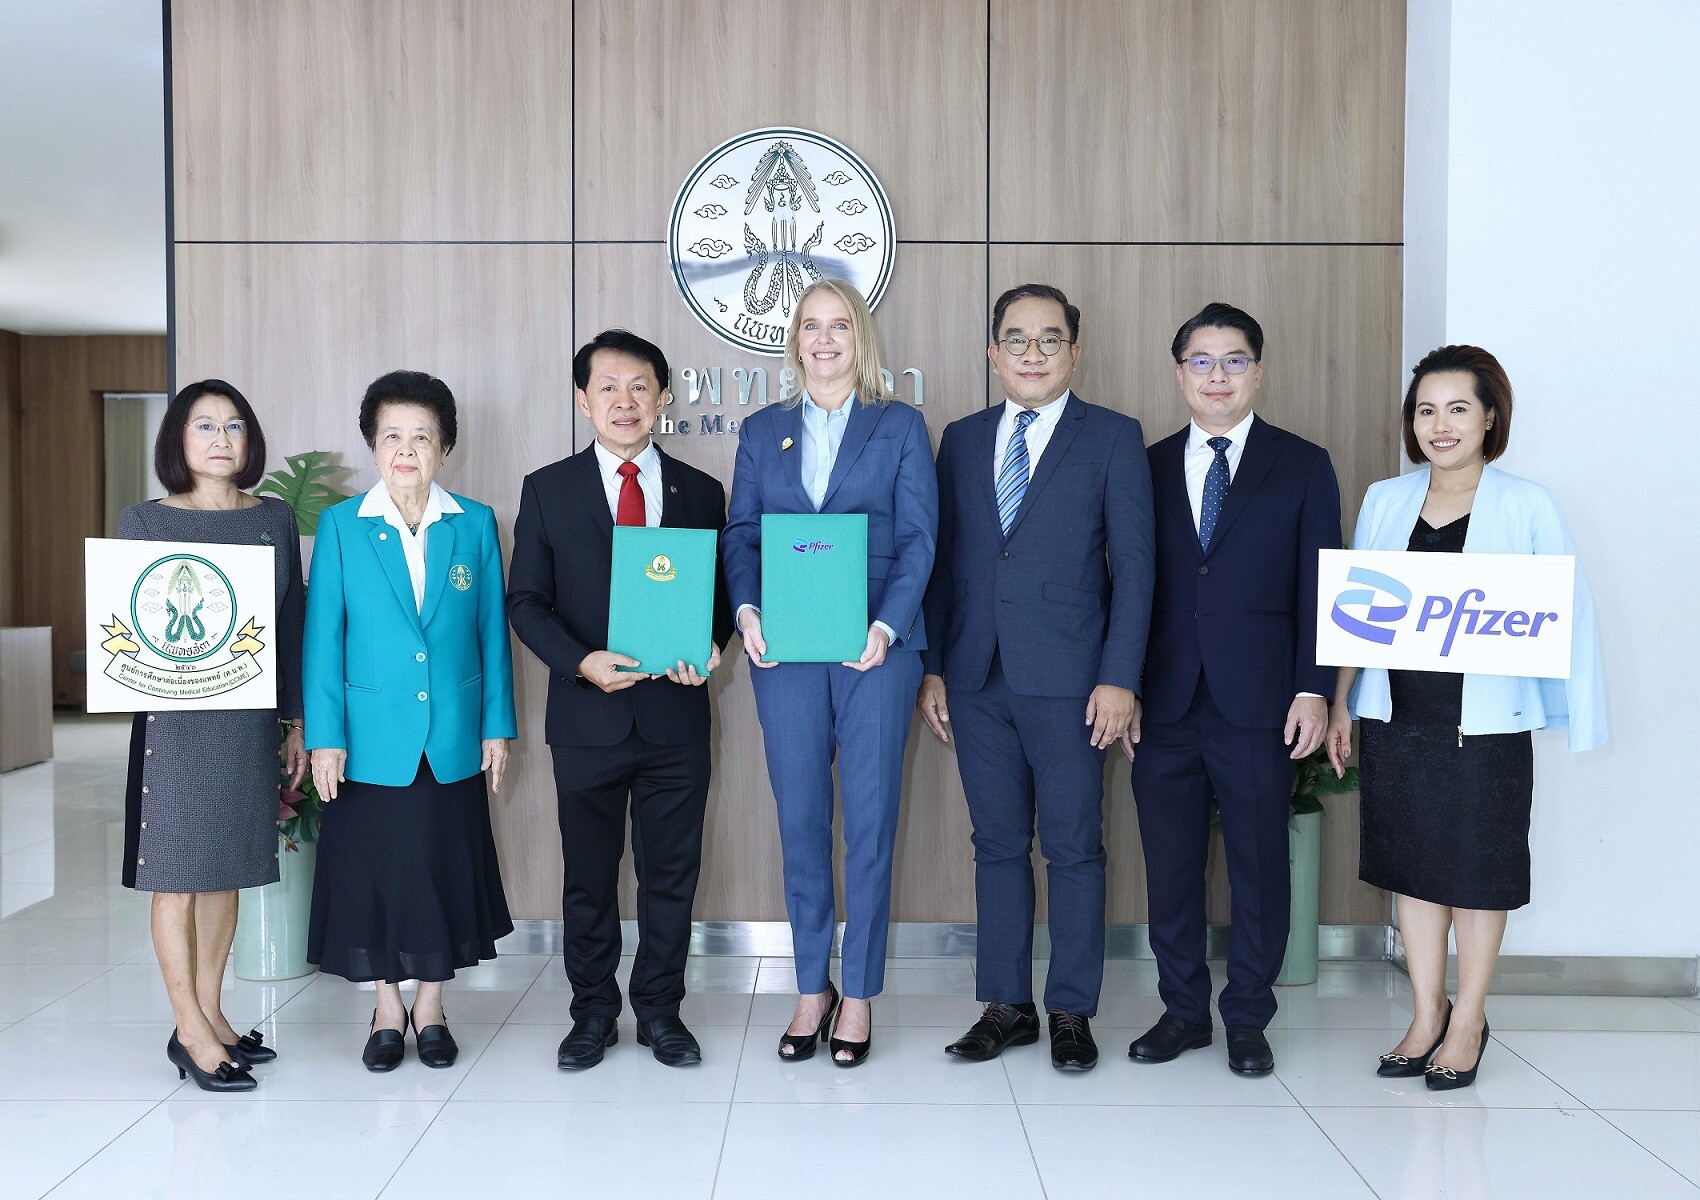 ไฟเซอร์ ประเทศไทย ลงนาม MOU ร่วมกับ ศูนย์การศึกษาต่อเนื่องของแพทย์ ยกระดับพร้อมขับเคลื่อนวิชาชีพเวชกรรมยุคดิจิทัล